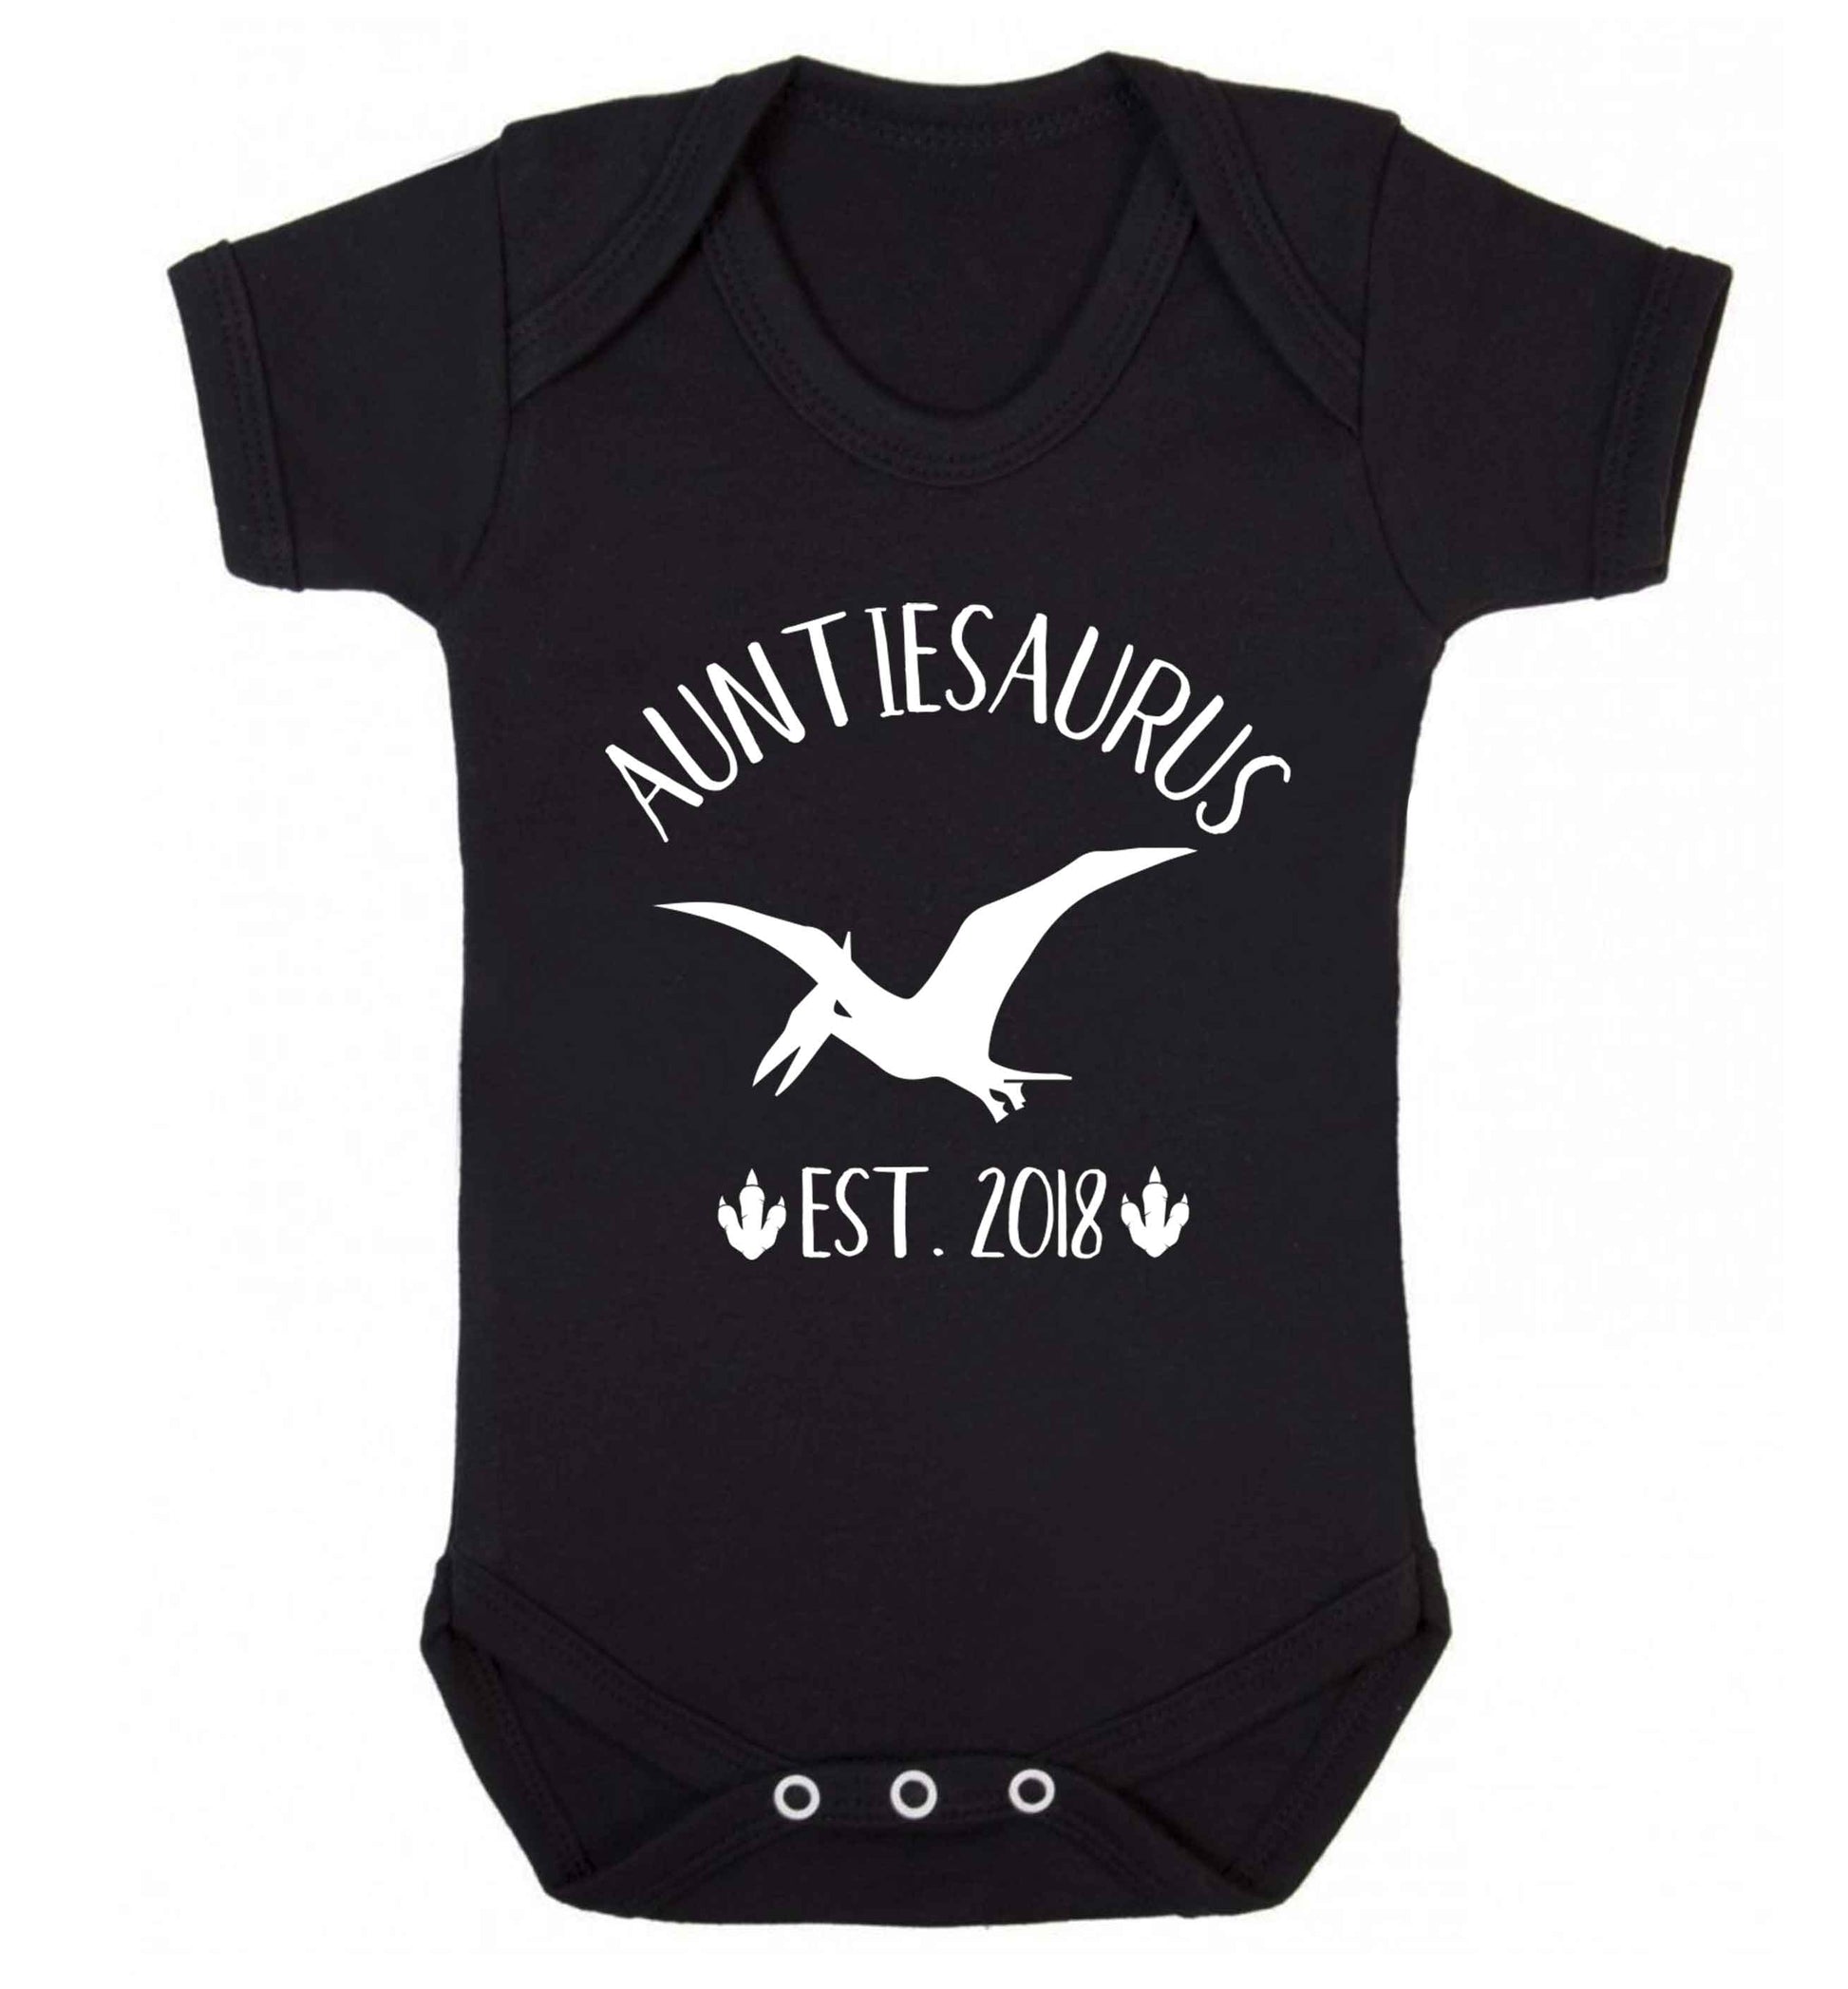 Personalised auntiesaurus since (custom date) Baby Vest black 18-24 months